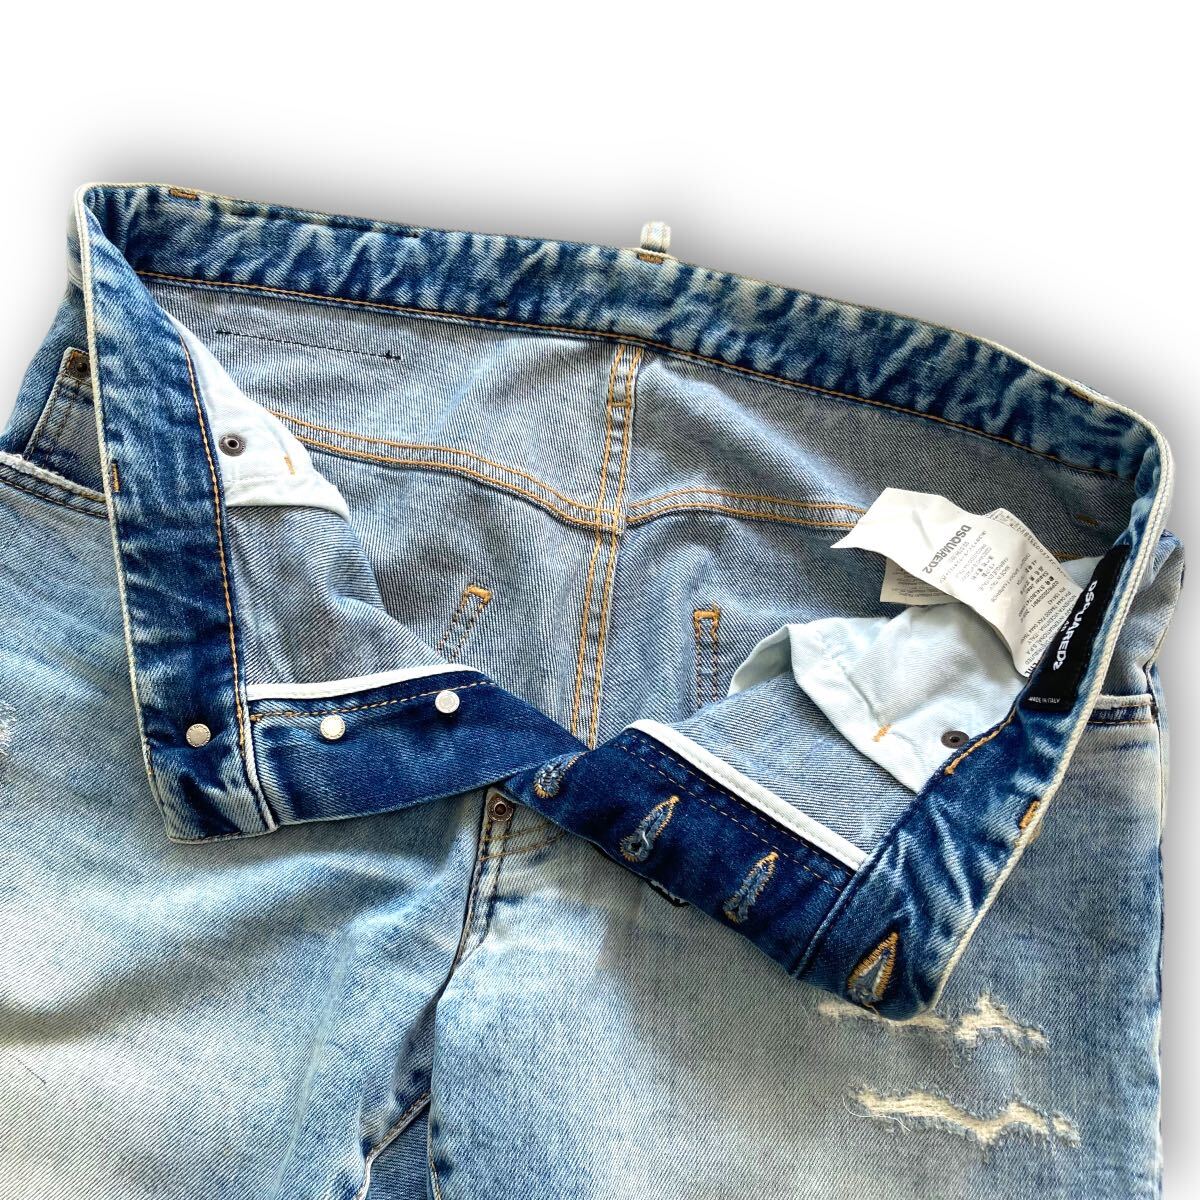 [DSQUARED2] Dsquared Italy made damage Denim pants skinny jeans ske-ta- jeans SKATER JEAN black tag 1964 (48)